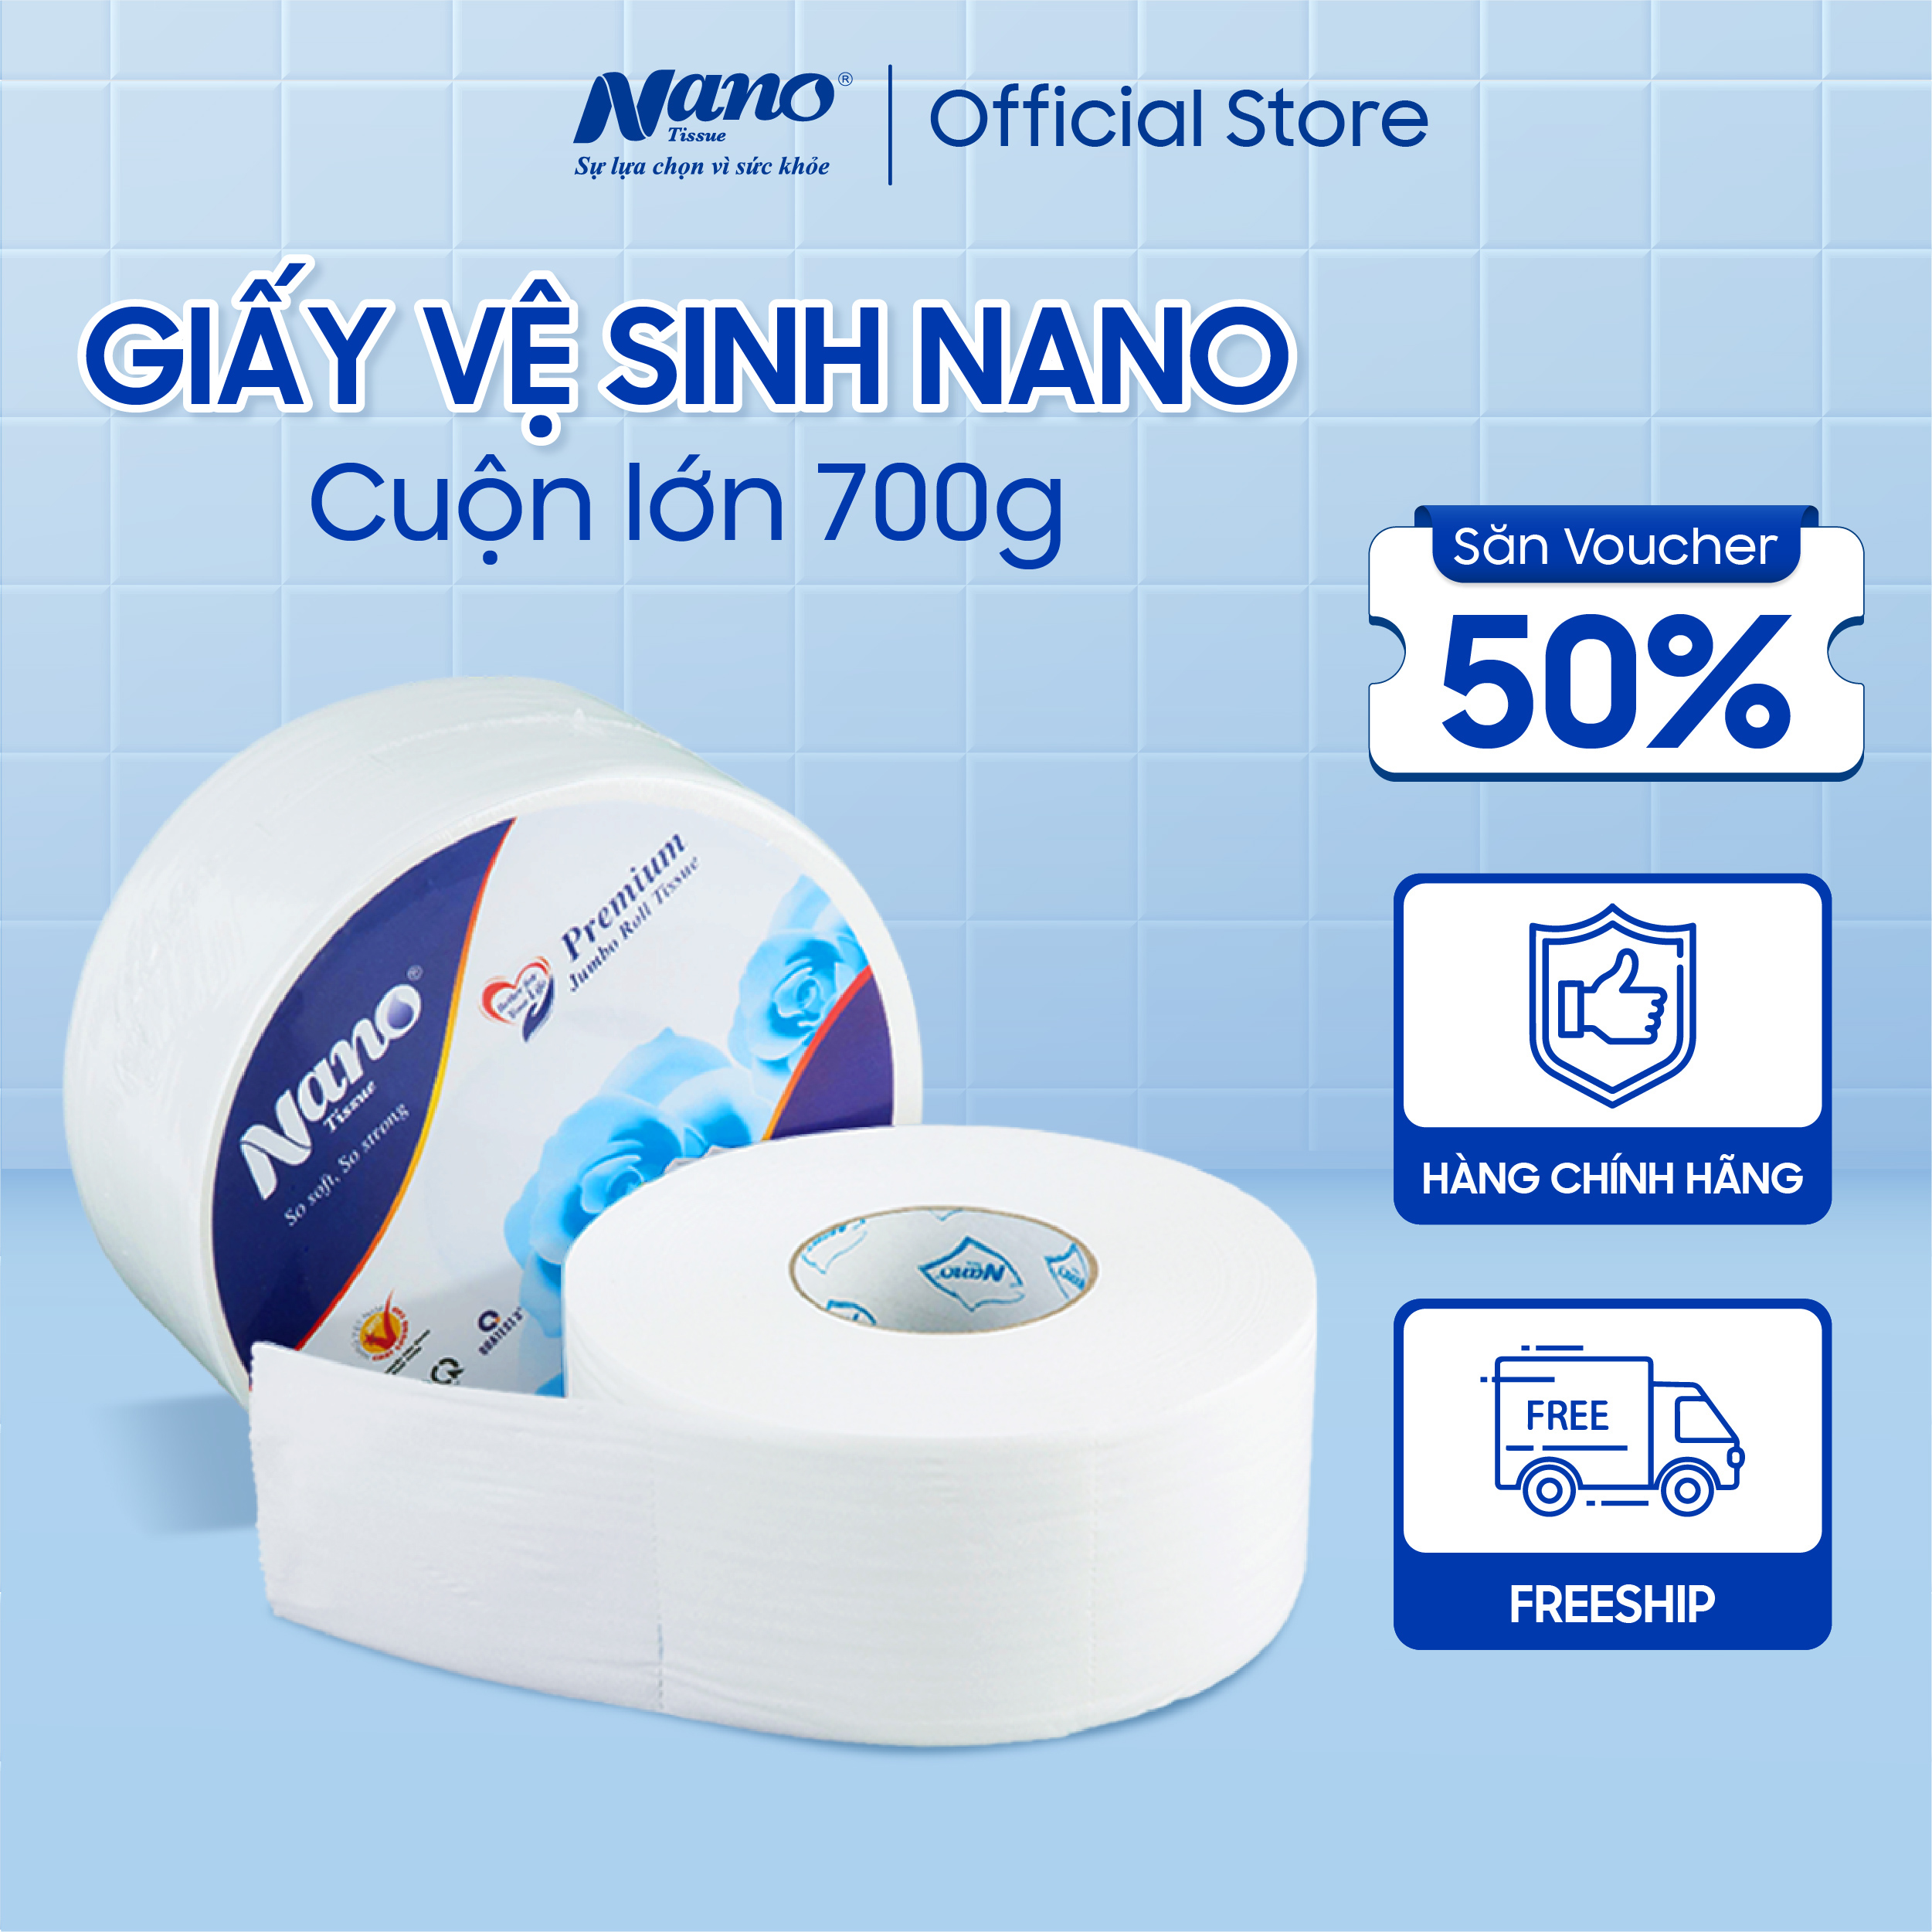 Giấy vệ sinh cuộn lớn 2 lớp mềm mại Nano, cuộn lớn 700g, an toàn tiết kiệm